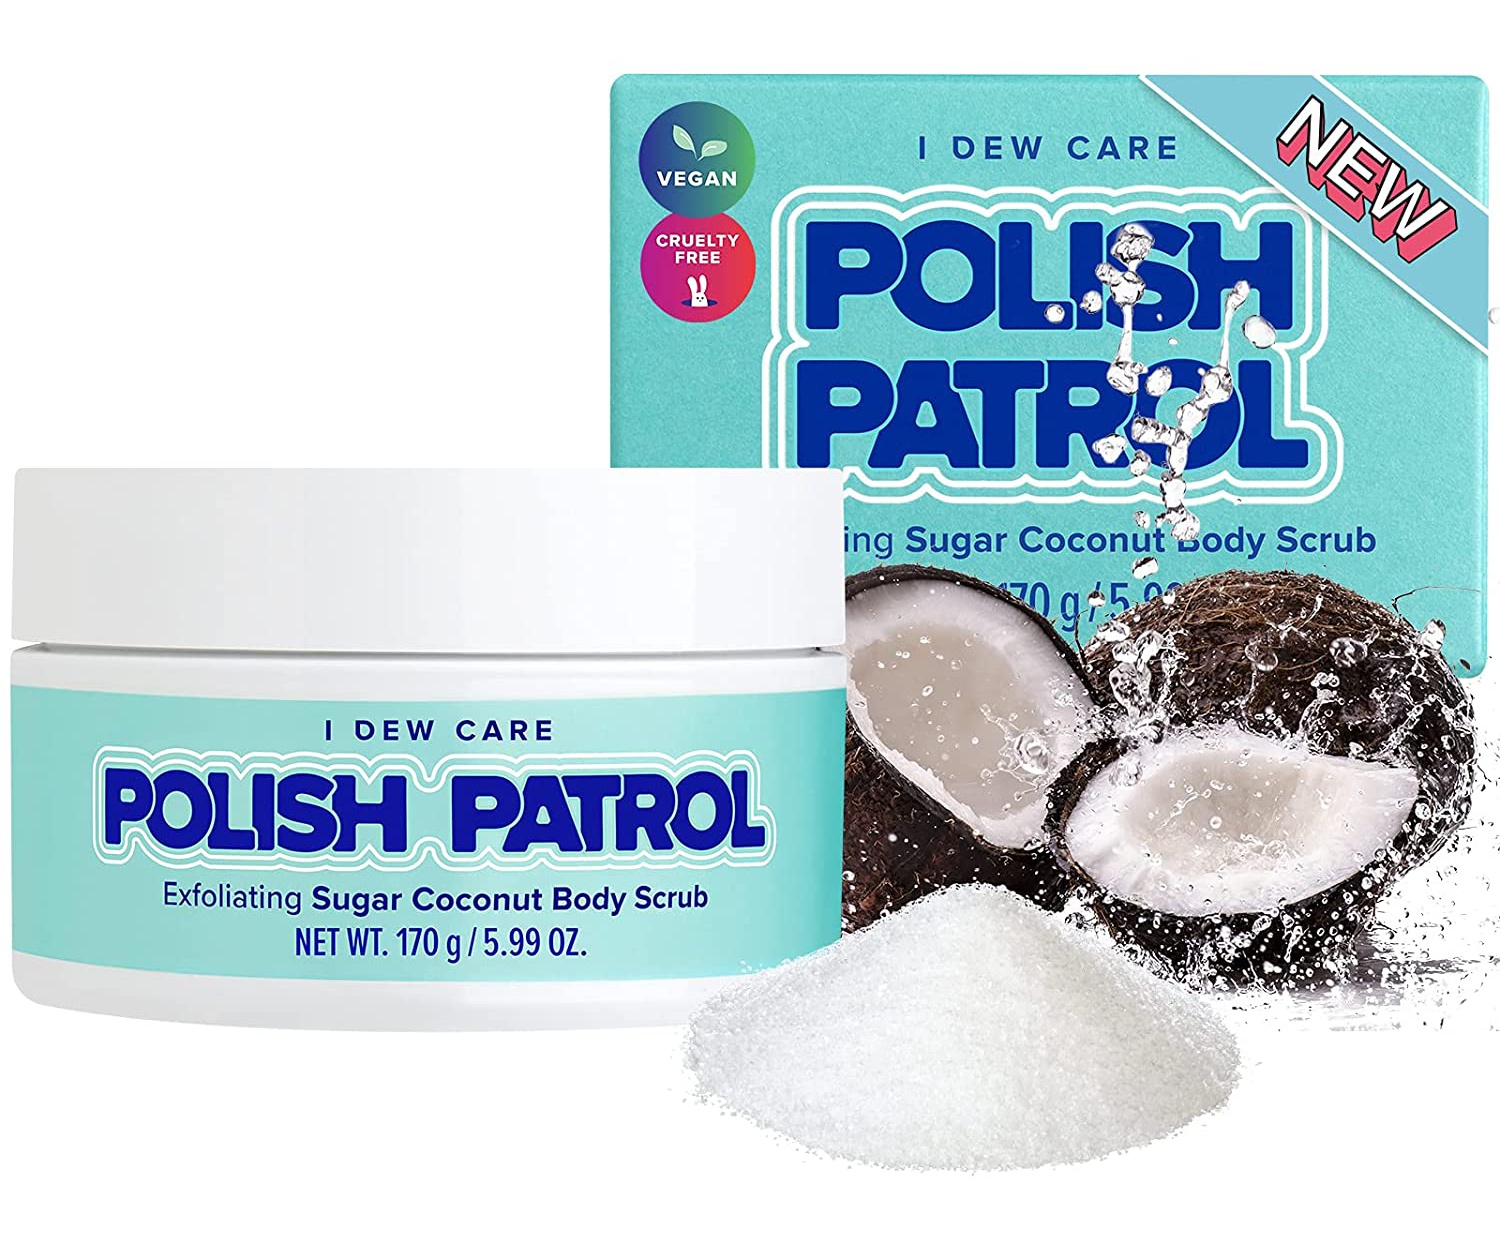 I Dew Care Polish Patrol Exfoliating Sugar Coconut Body Scrub